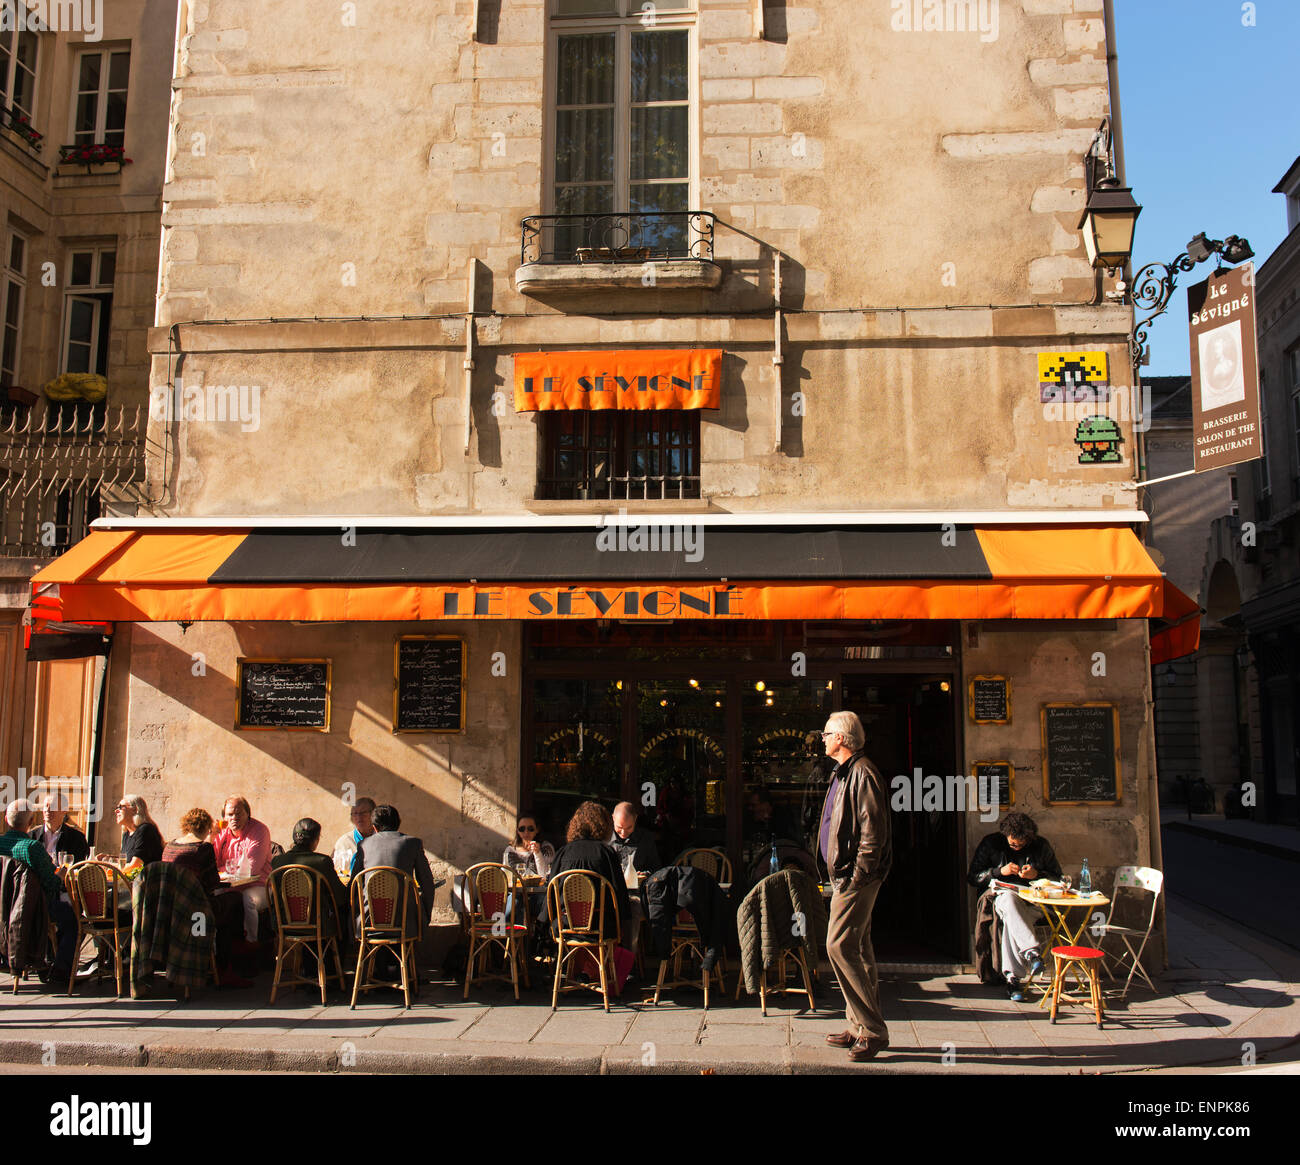 Cafe en el Marais (el pantano) distrito de París. Foto de stock